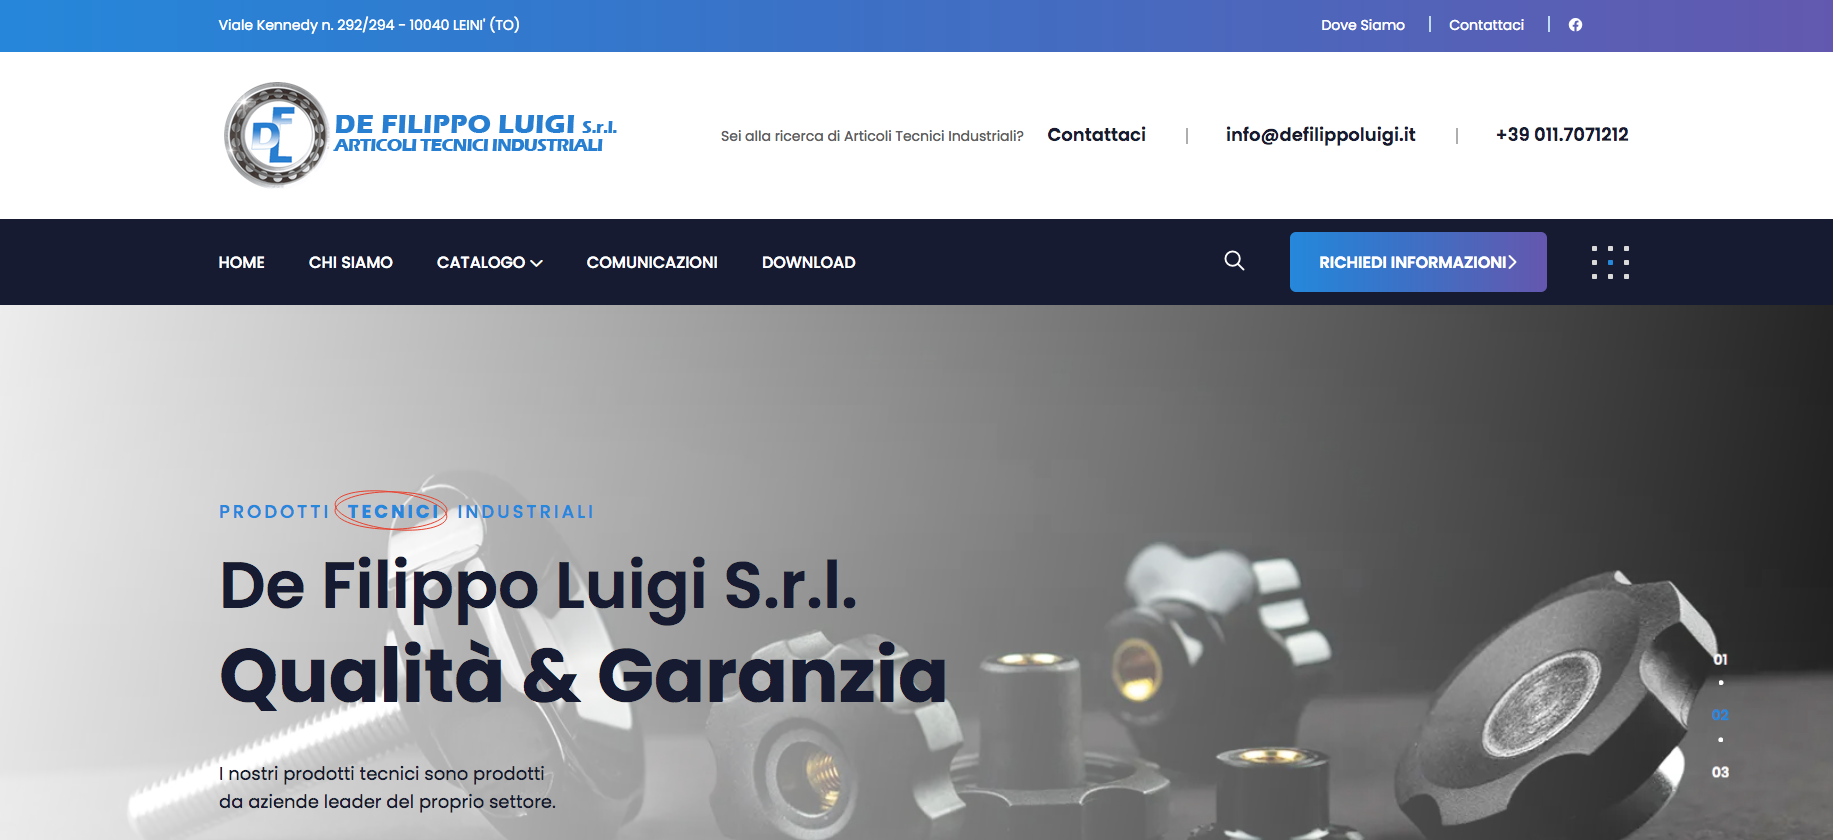 Articoli Tecnici Industriali (Torino)